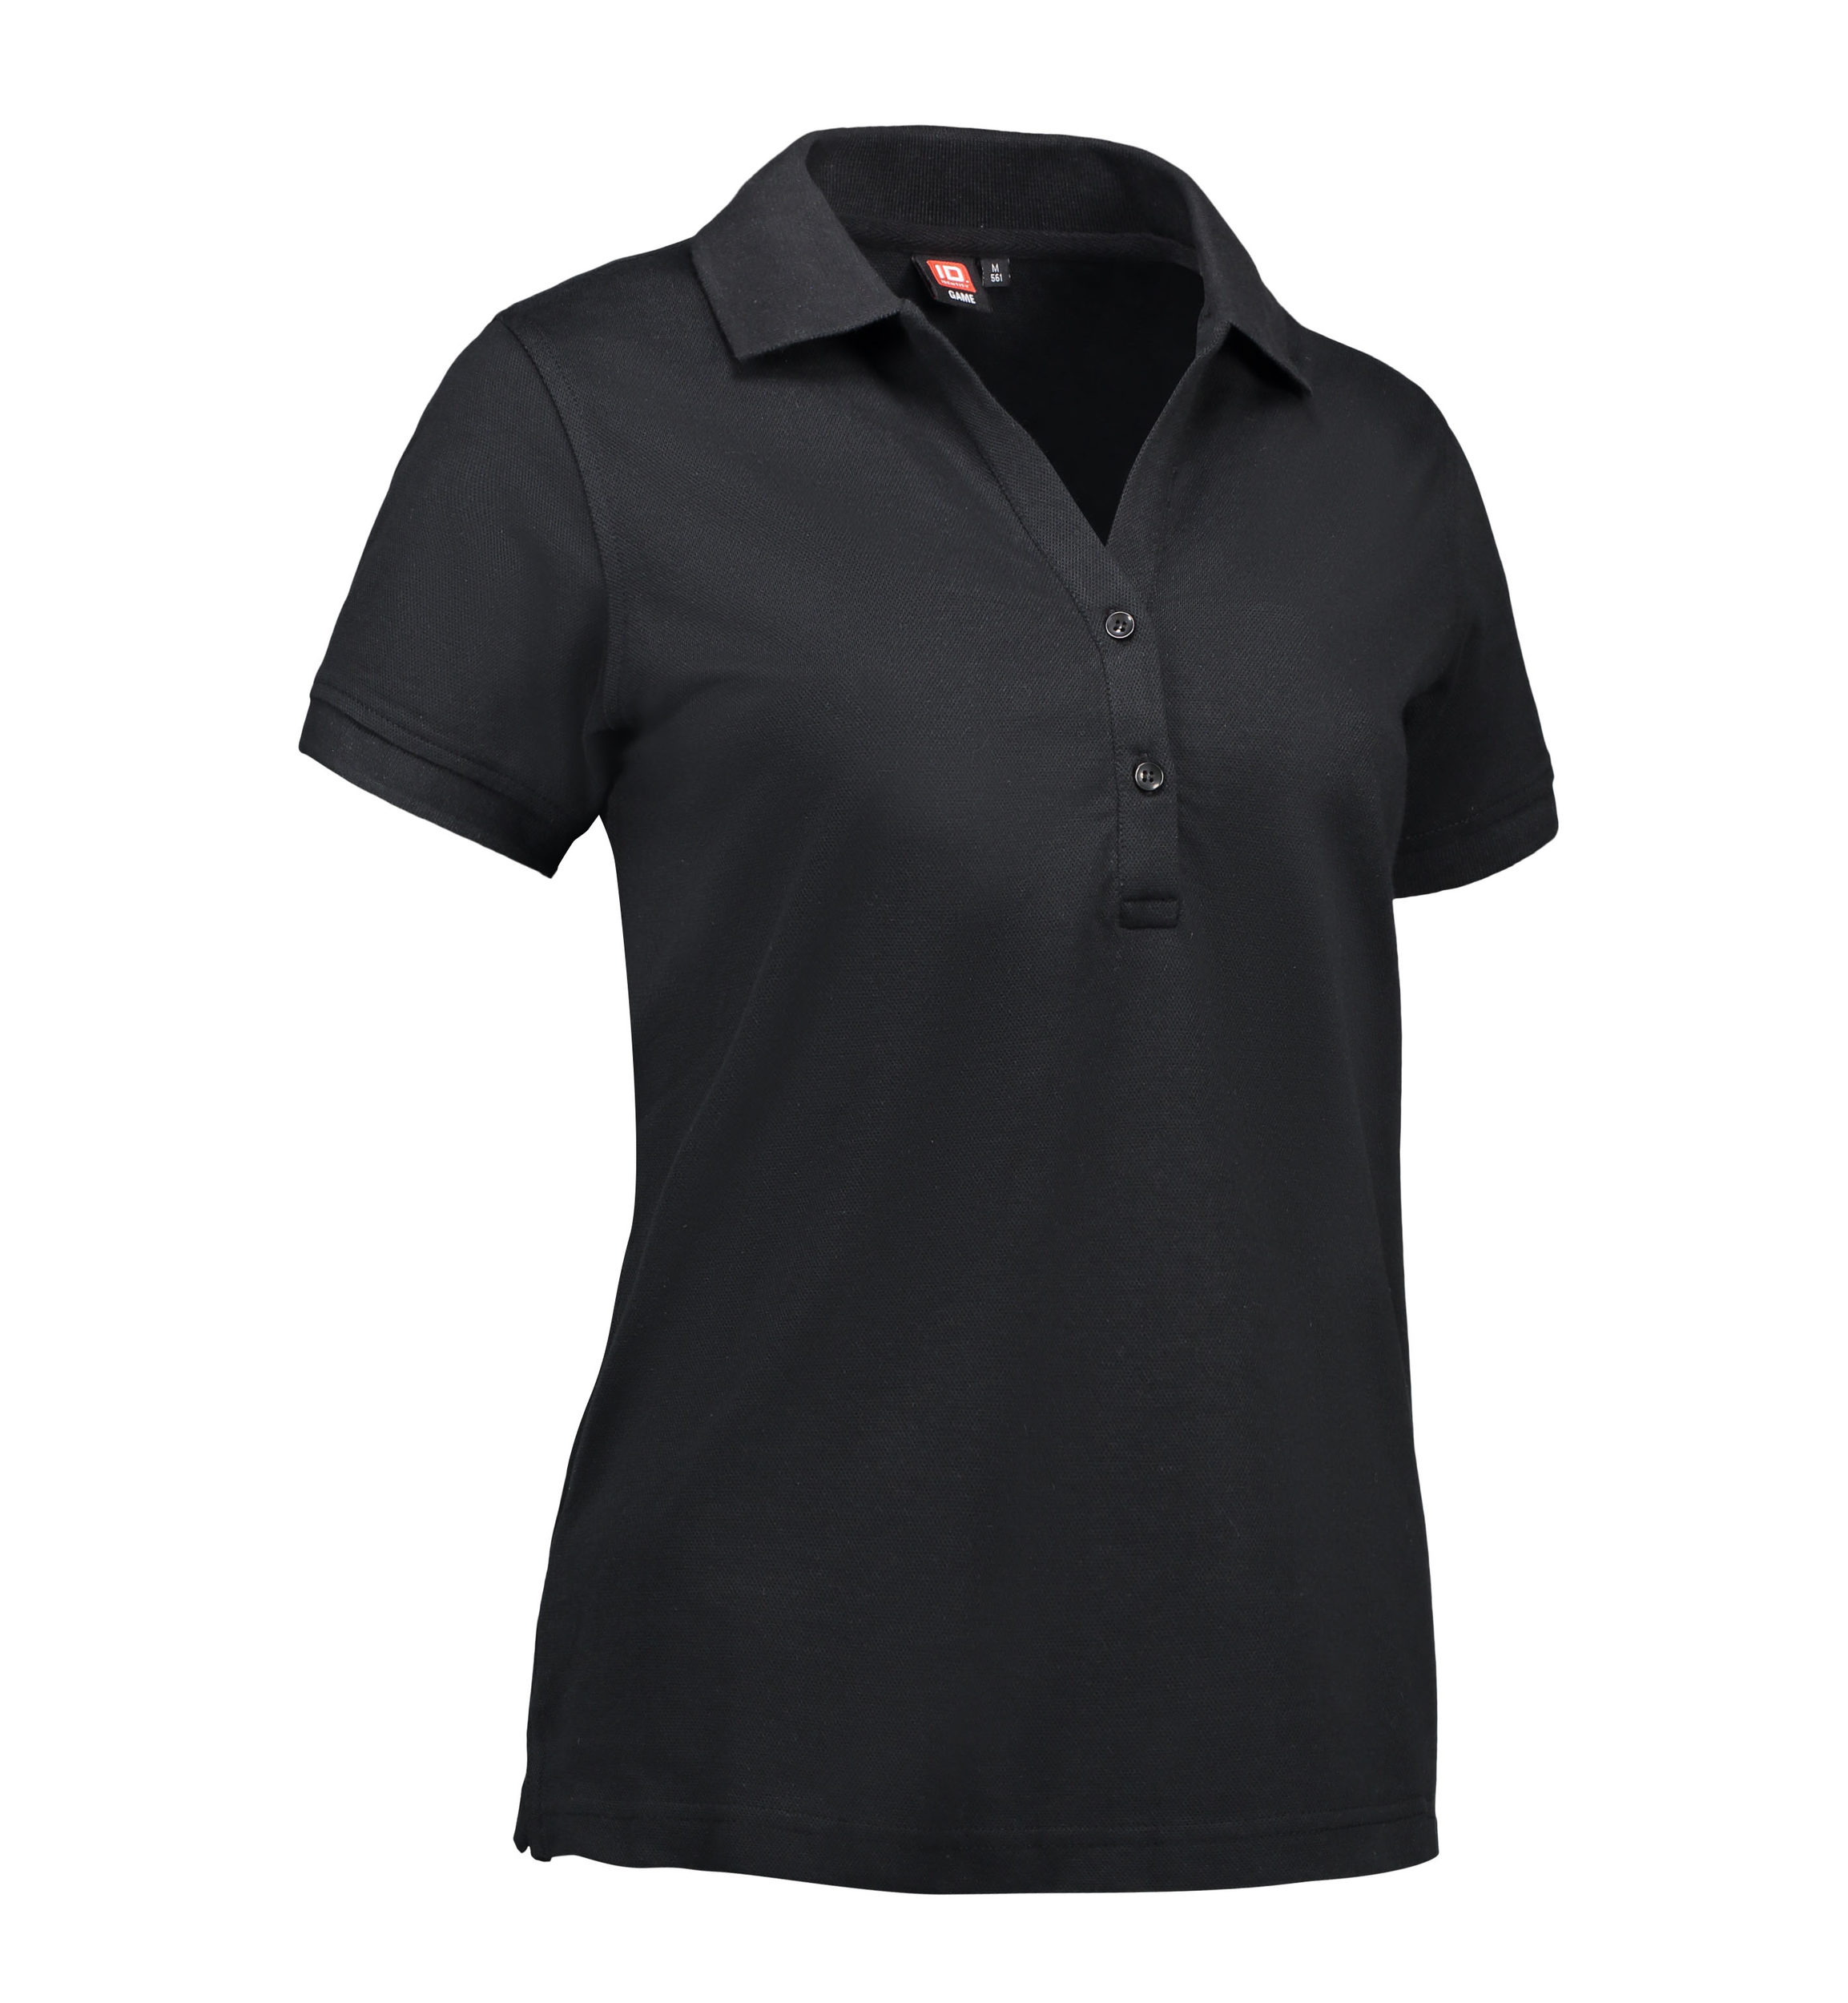 Se Polo t-shirt til damer i sort - 3XL hos Sygeplejebutikken.dk